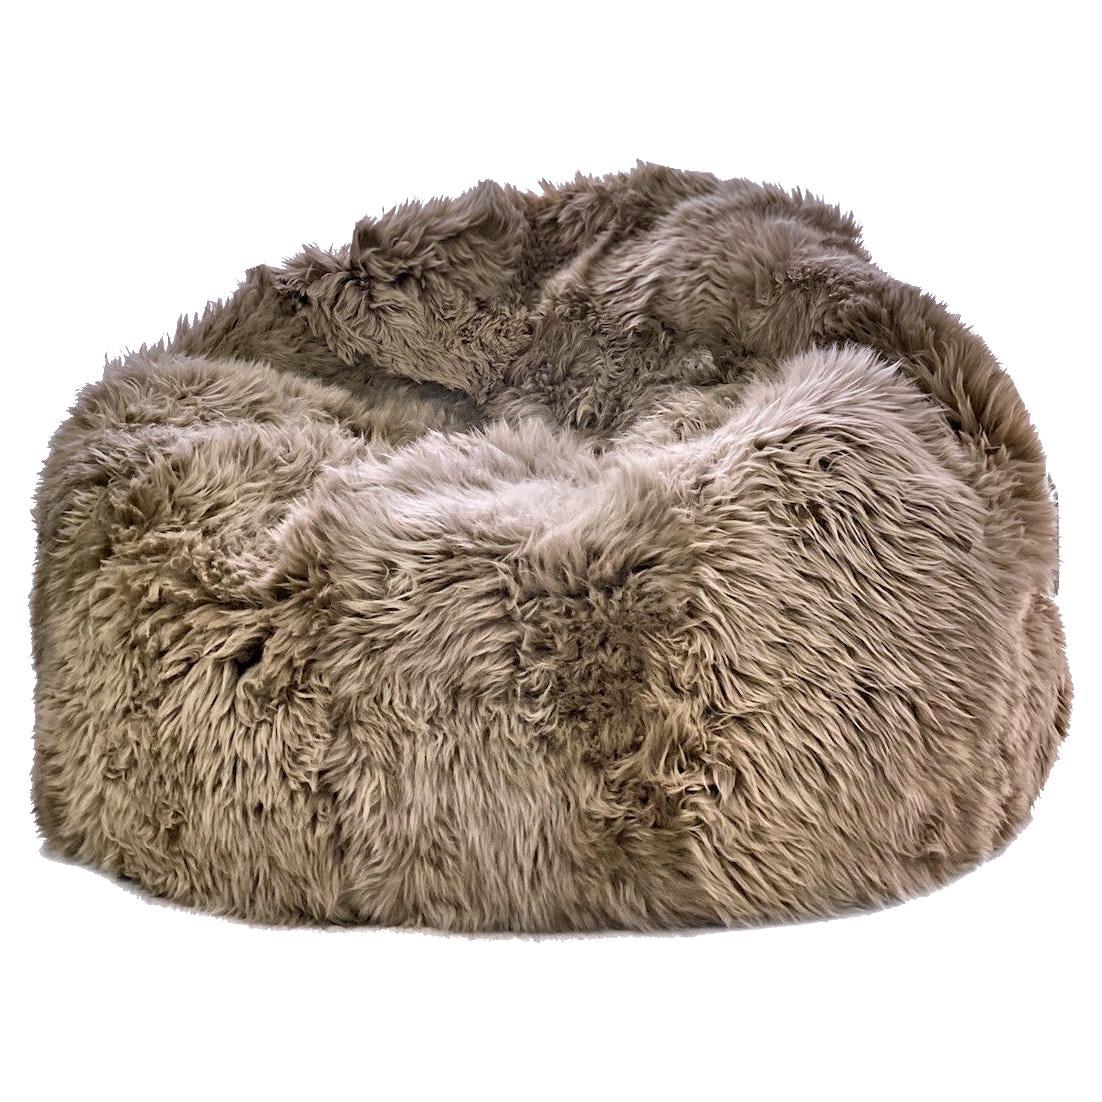 Fur Bean Bag Chair Cover taupe or Stone  - Merino Sheepskin